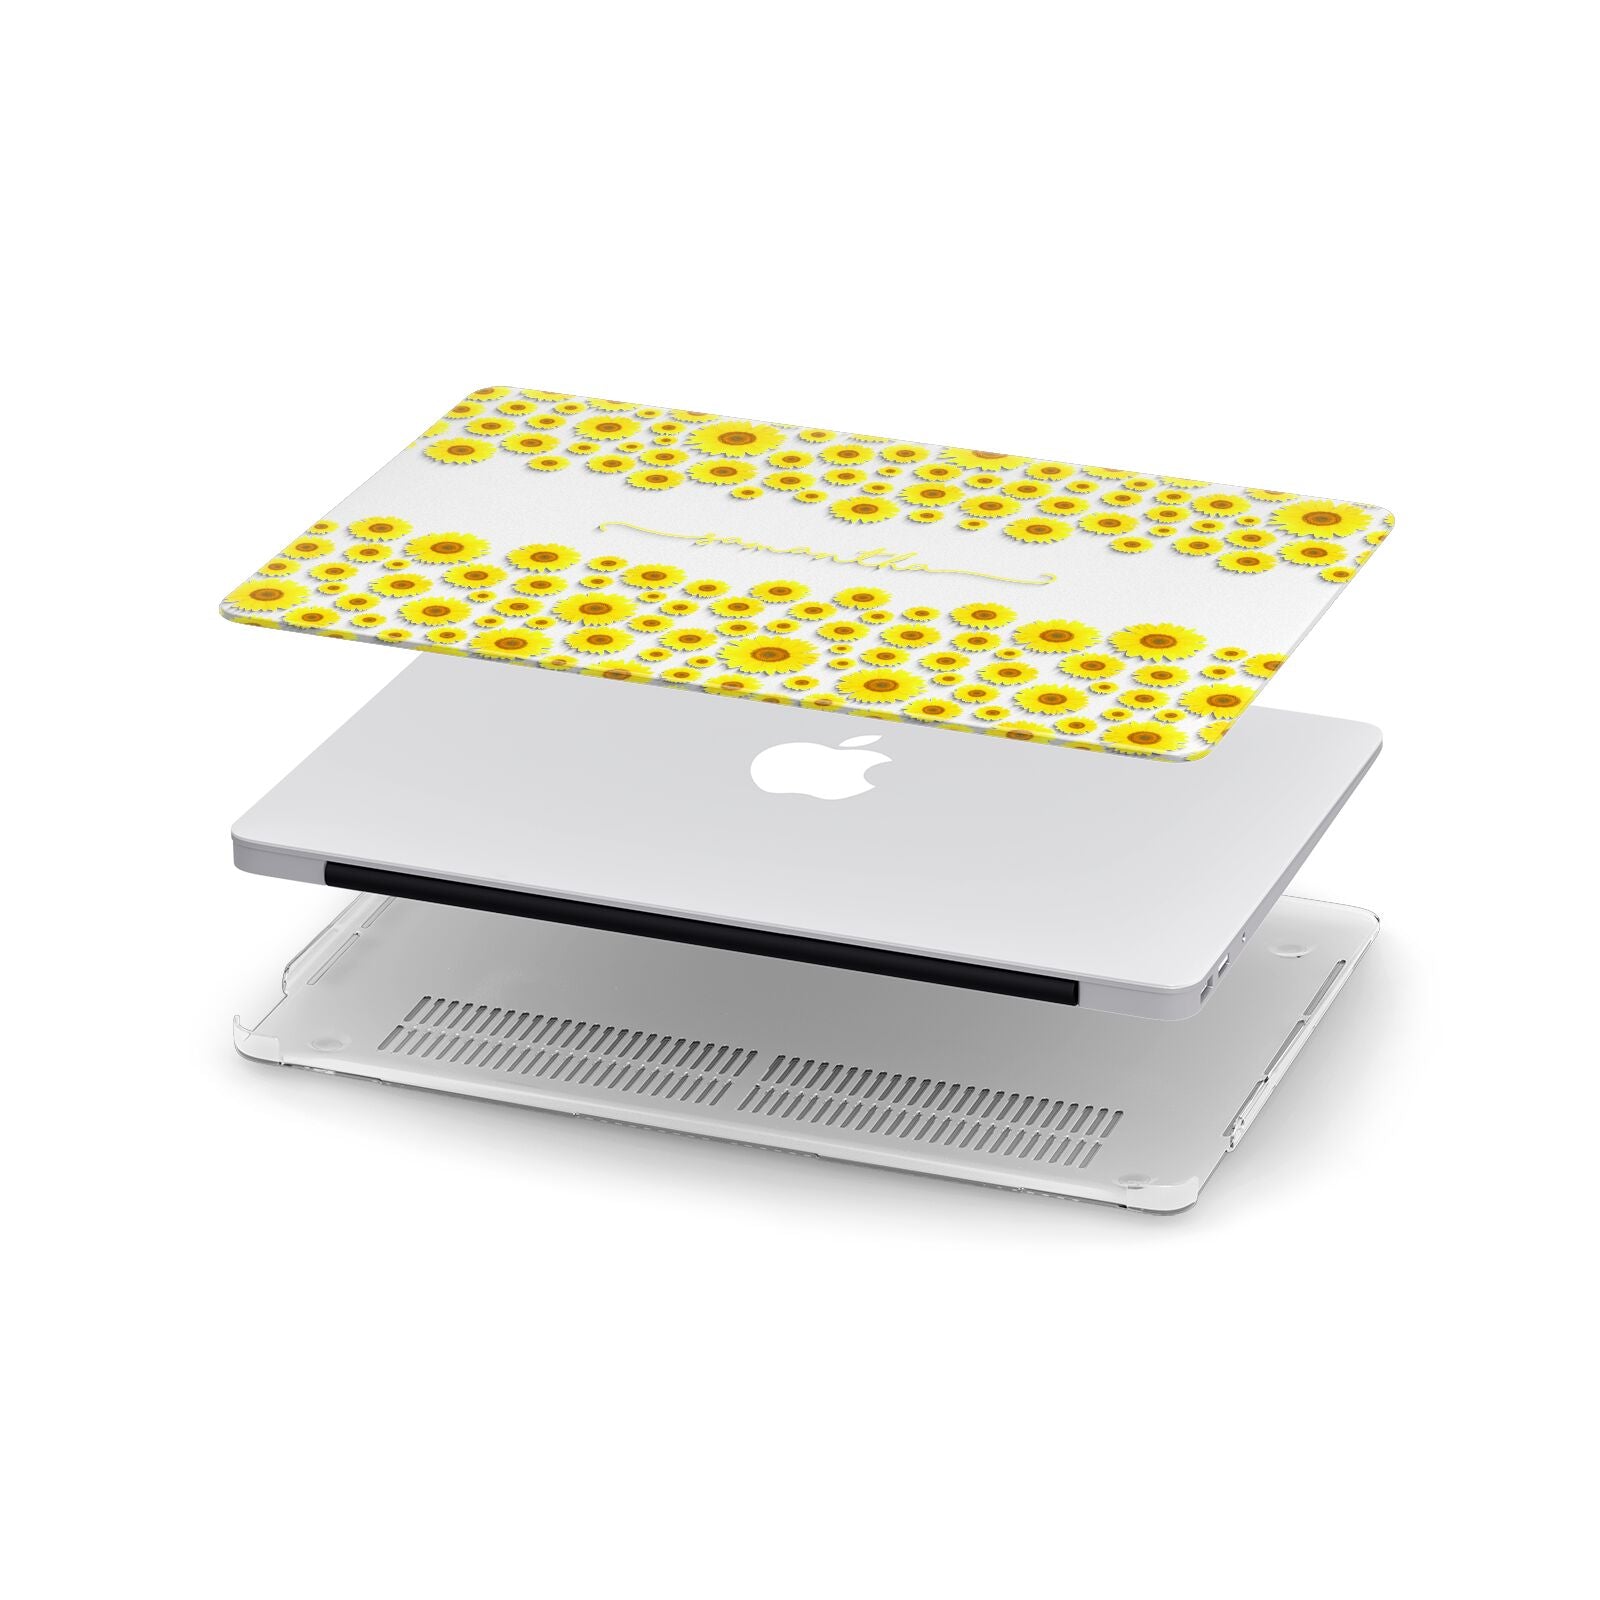 Personalised Sunflower Apple MacBook Case in Detail